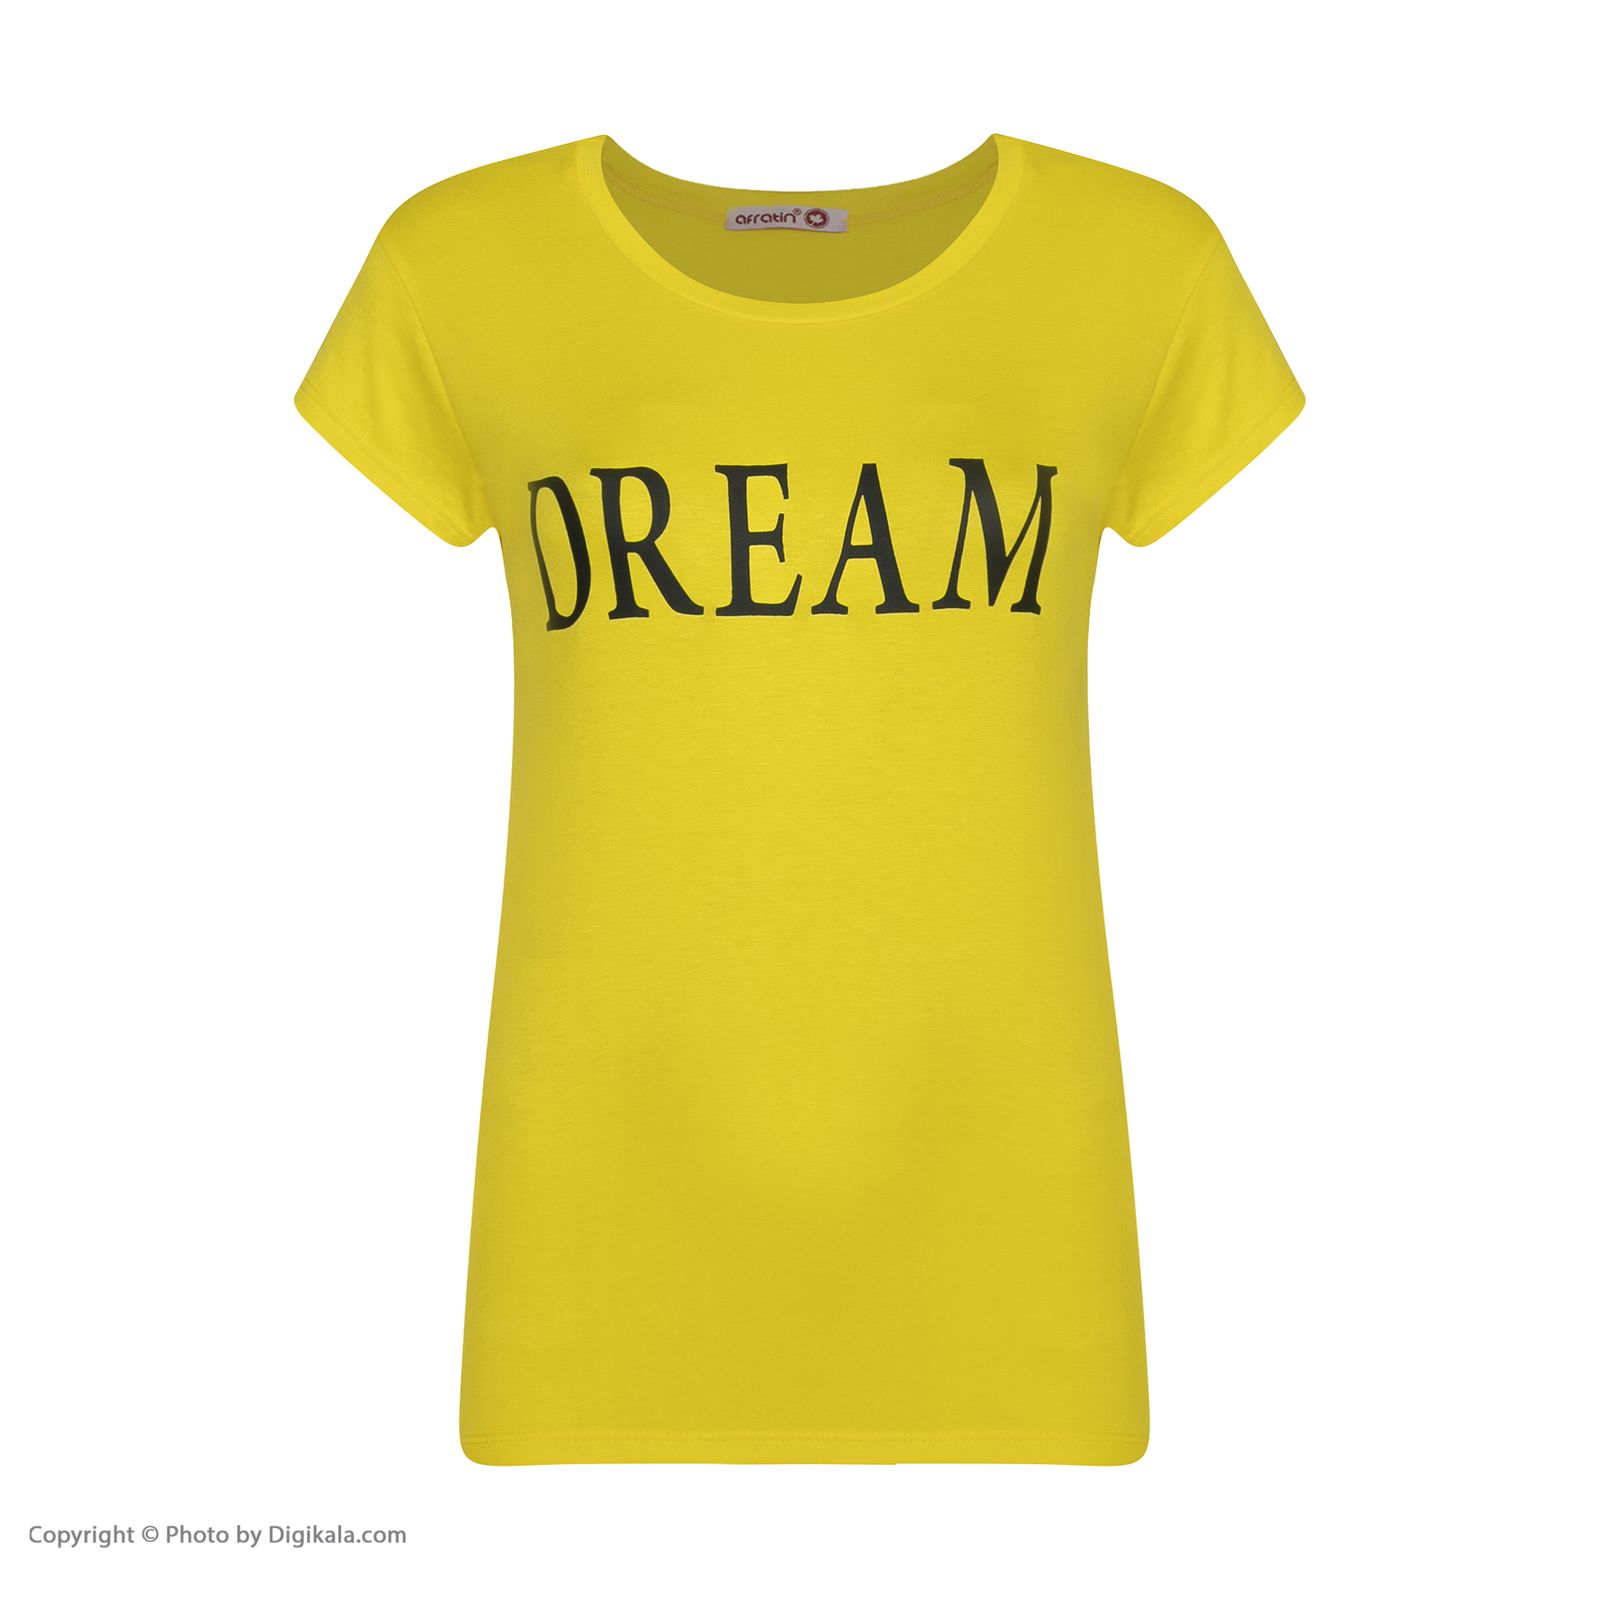 ست تی شرت و شلوارک زنانه افراتین مدل Dream کد 6558 رنگ زرد -  - 3